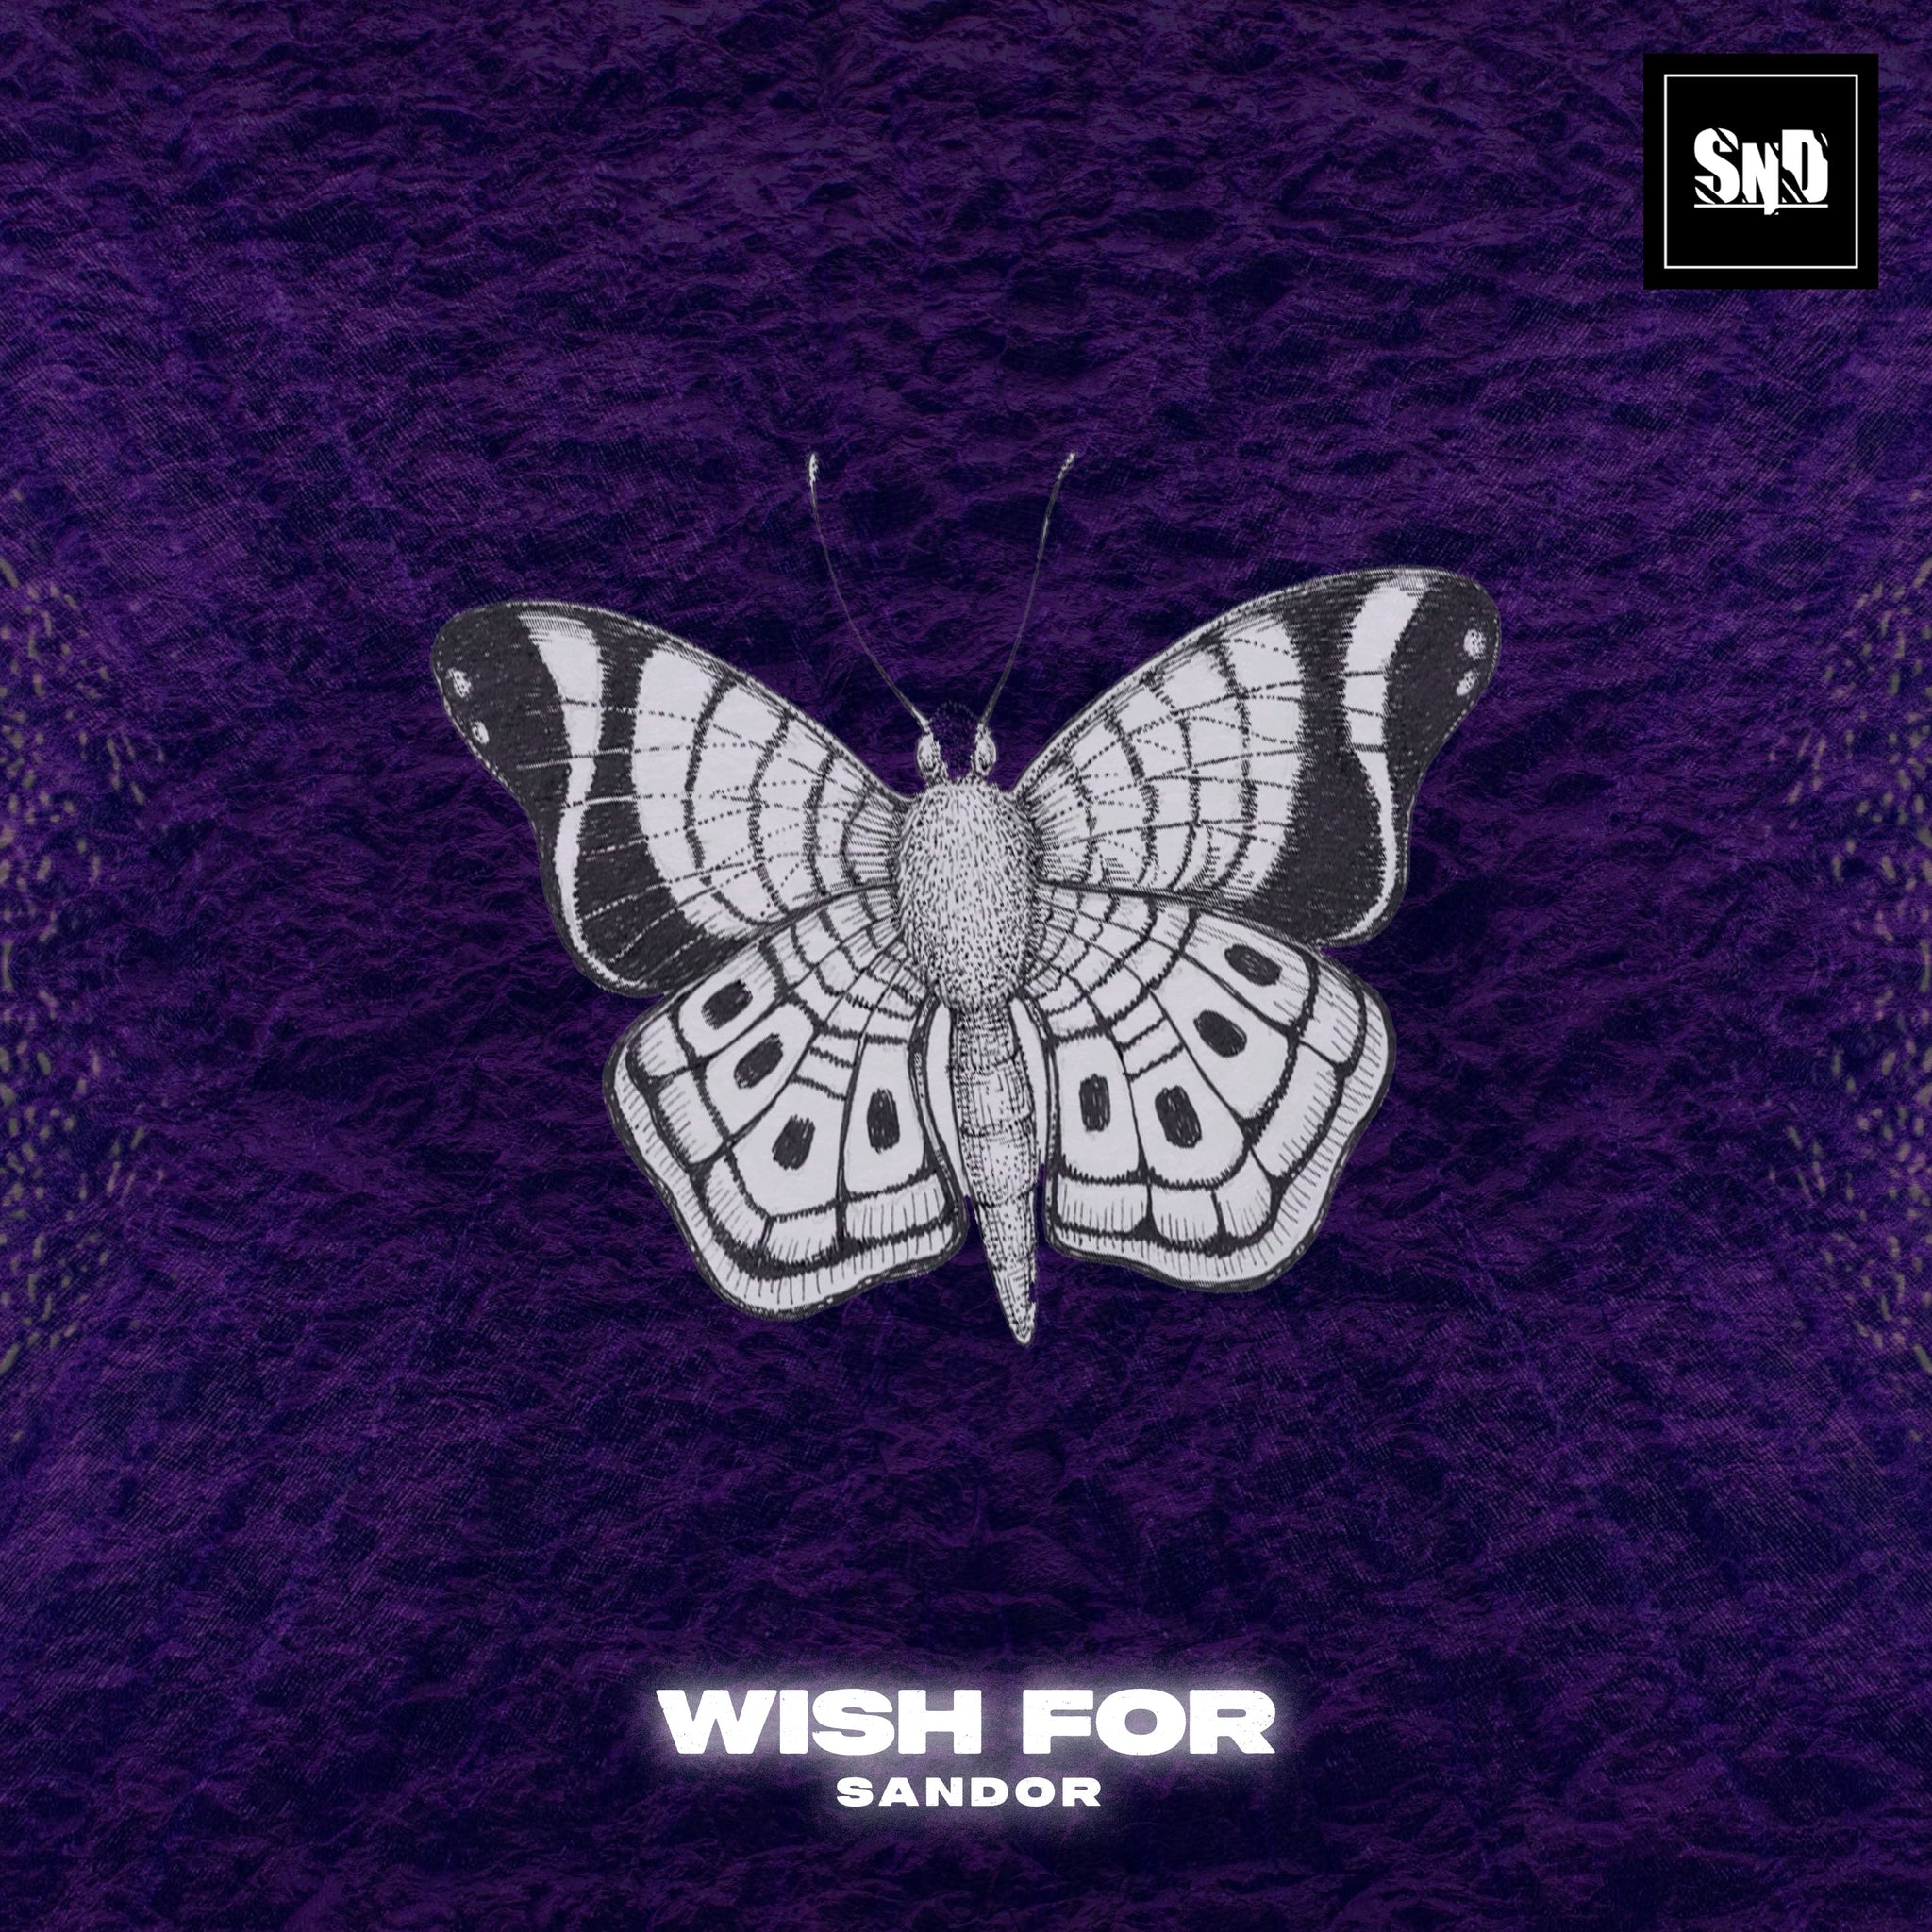 Wish For - Sandor - Scraps Audio